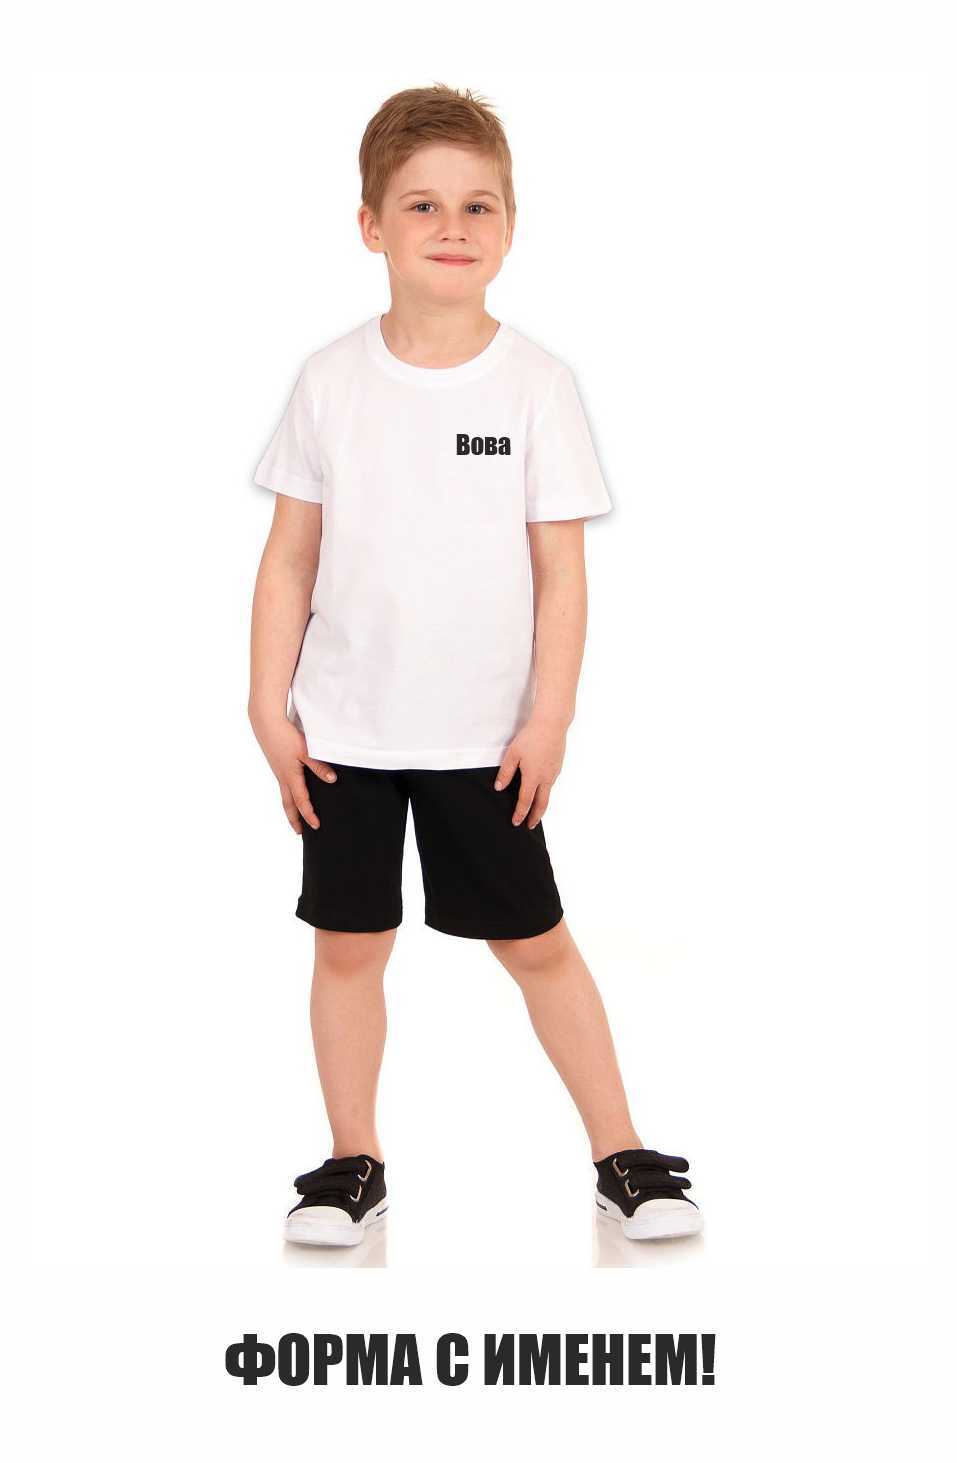 Белая футболка черные шорты дети